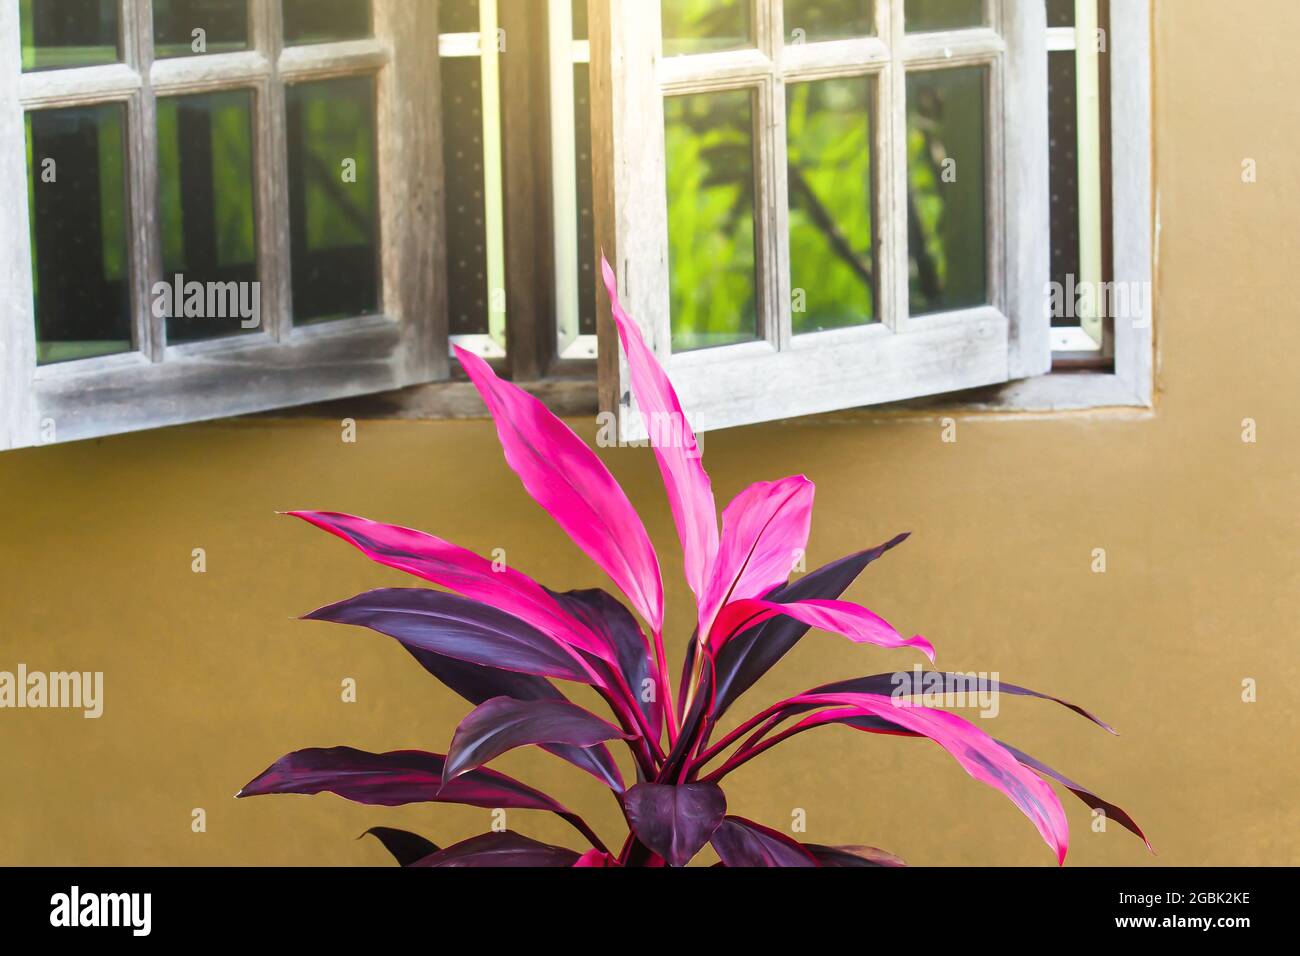 La cordyline fruticosa colorée ou plantes Ti plante feuillage poussant près de fenêtre en bois et mur en béton. Le soleil brille à travers la fenêtre sur l'arbre. Banque D'Images